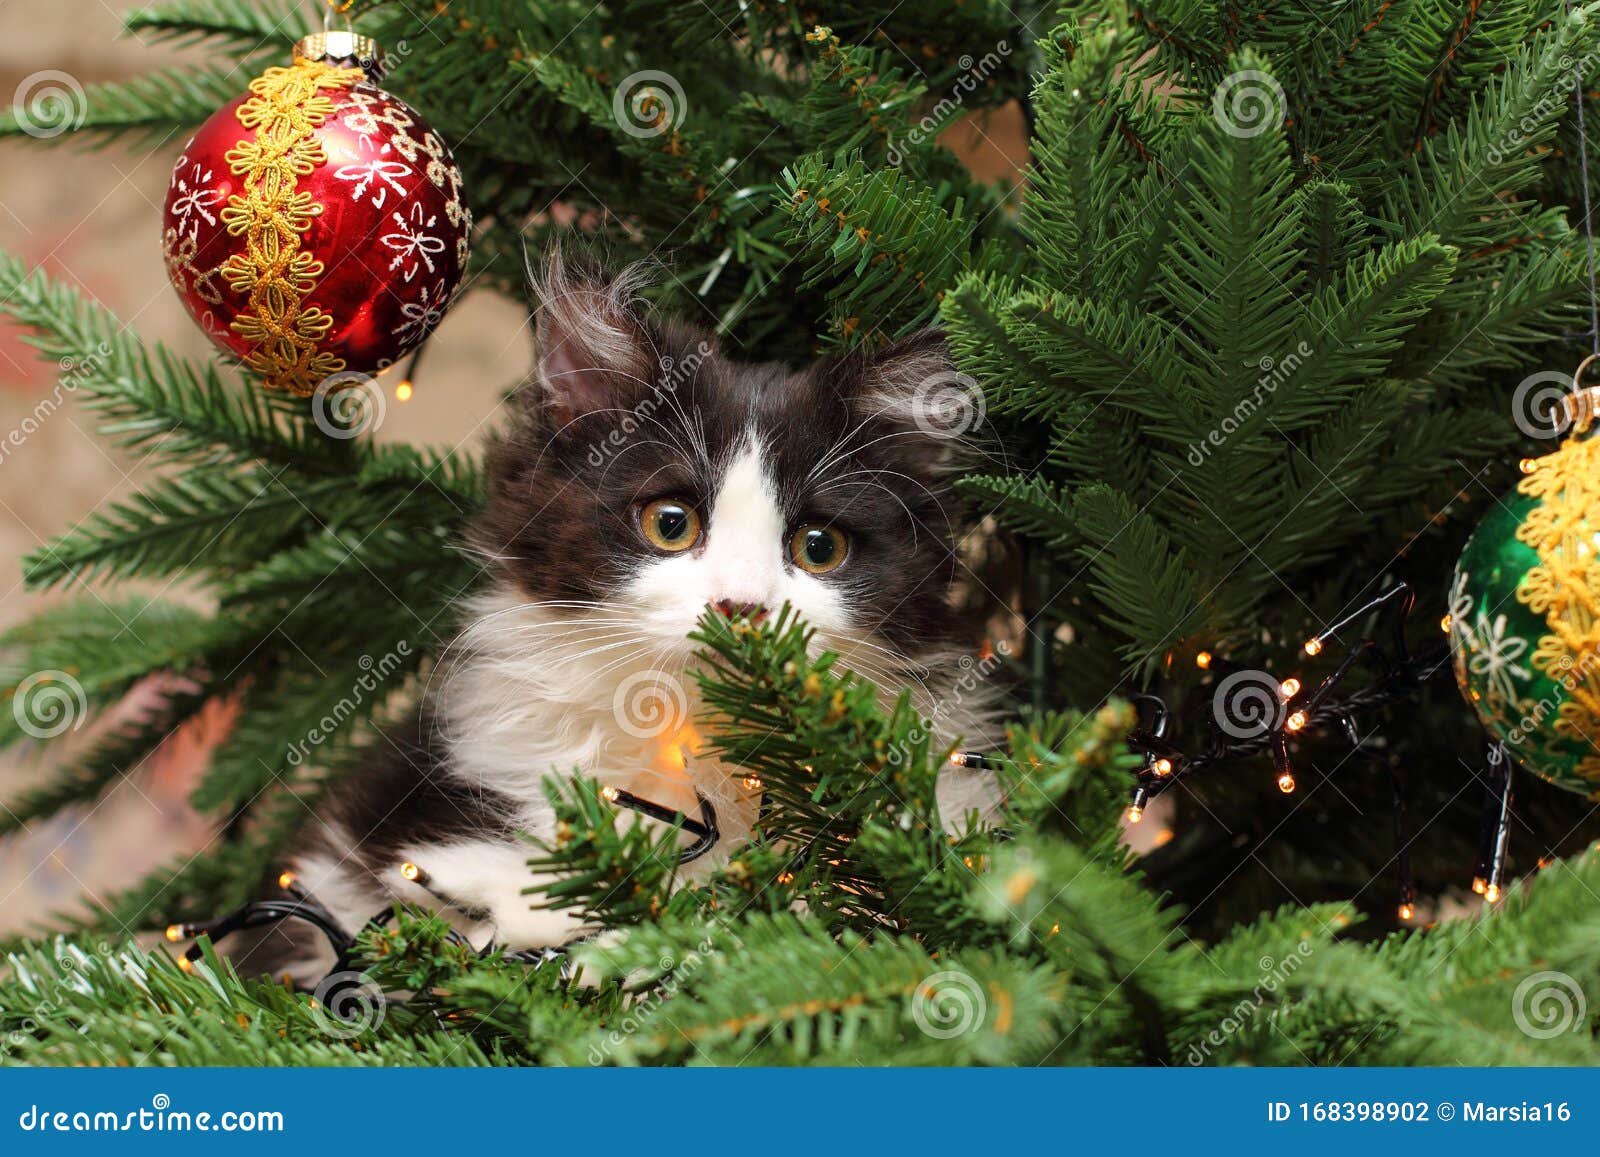 kitten climbing on a christmas tree